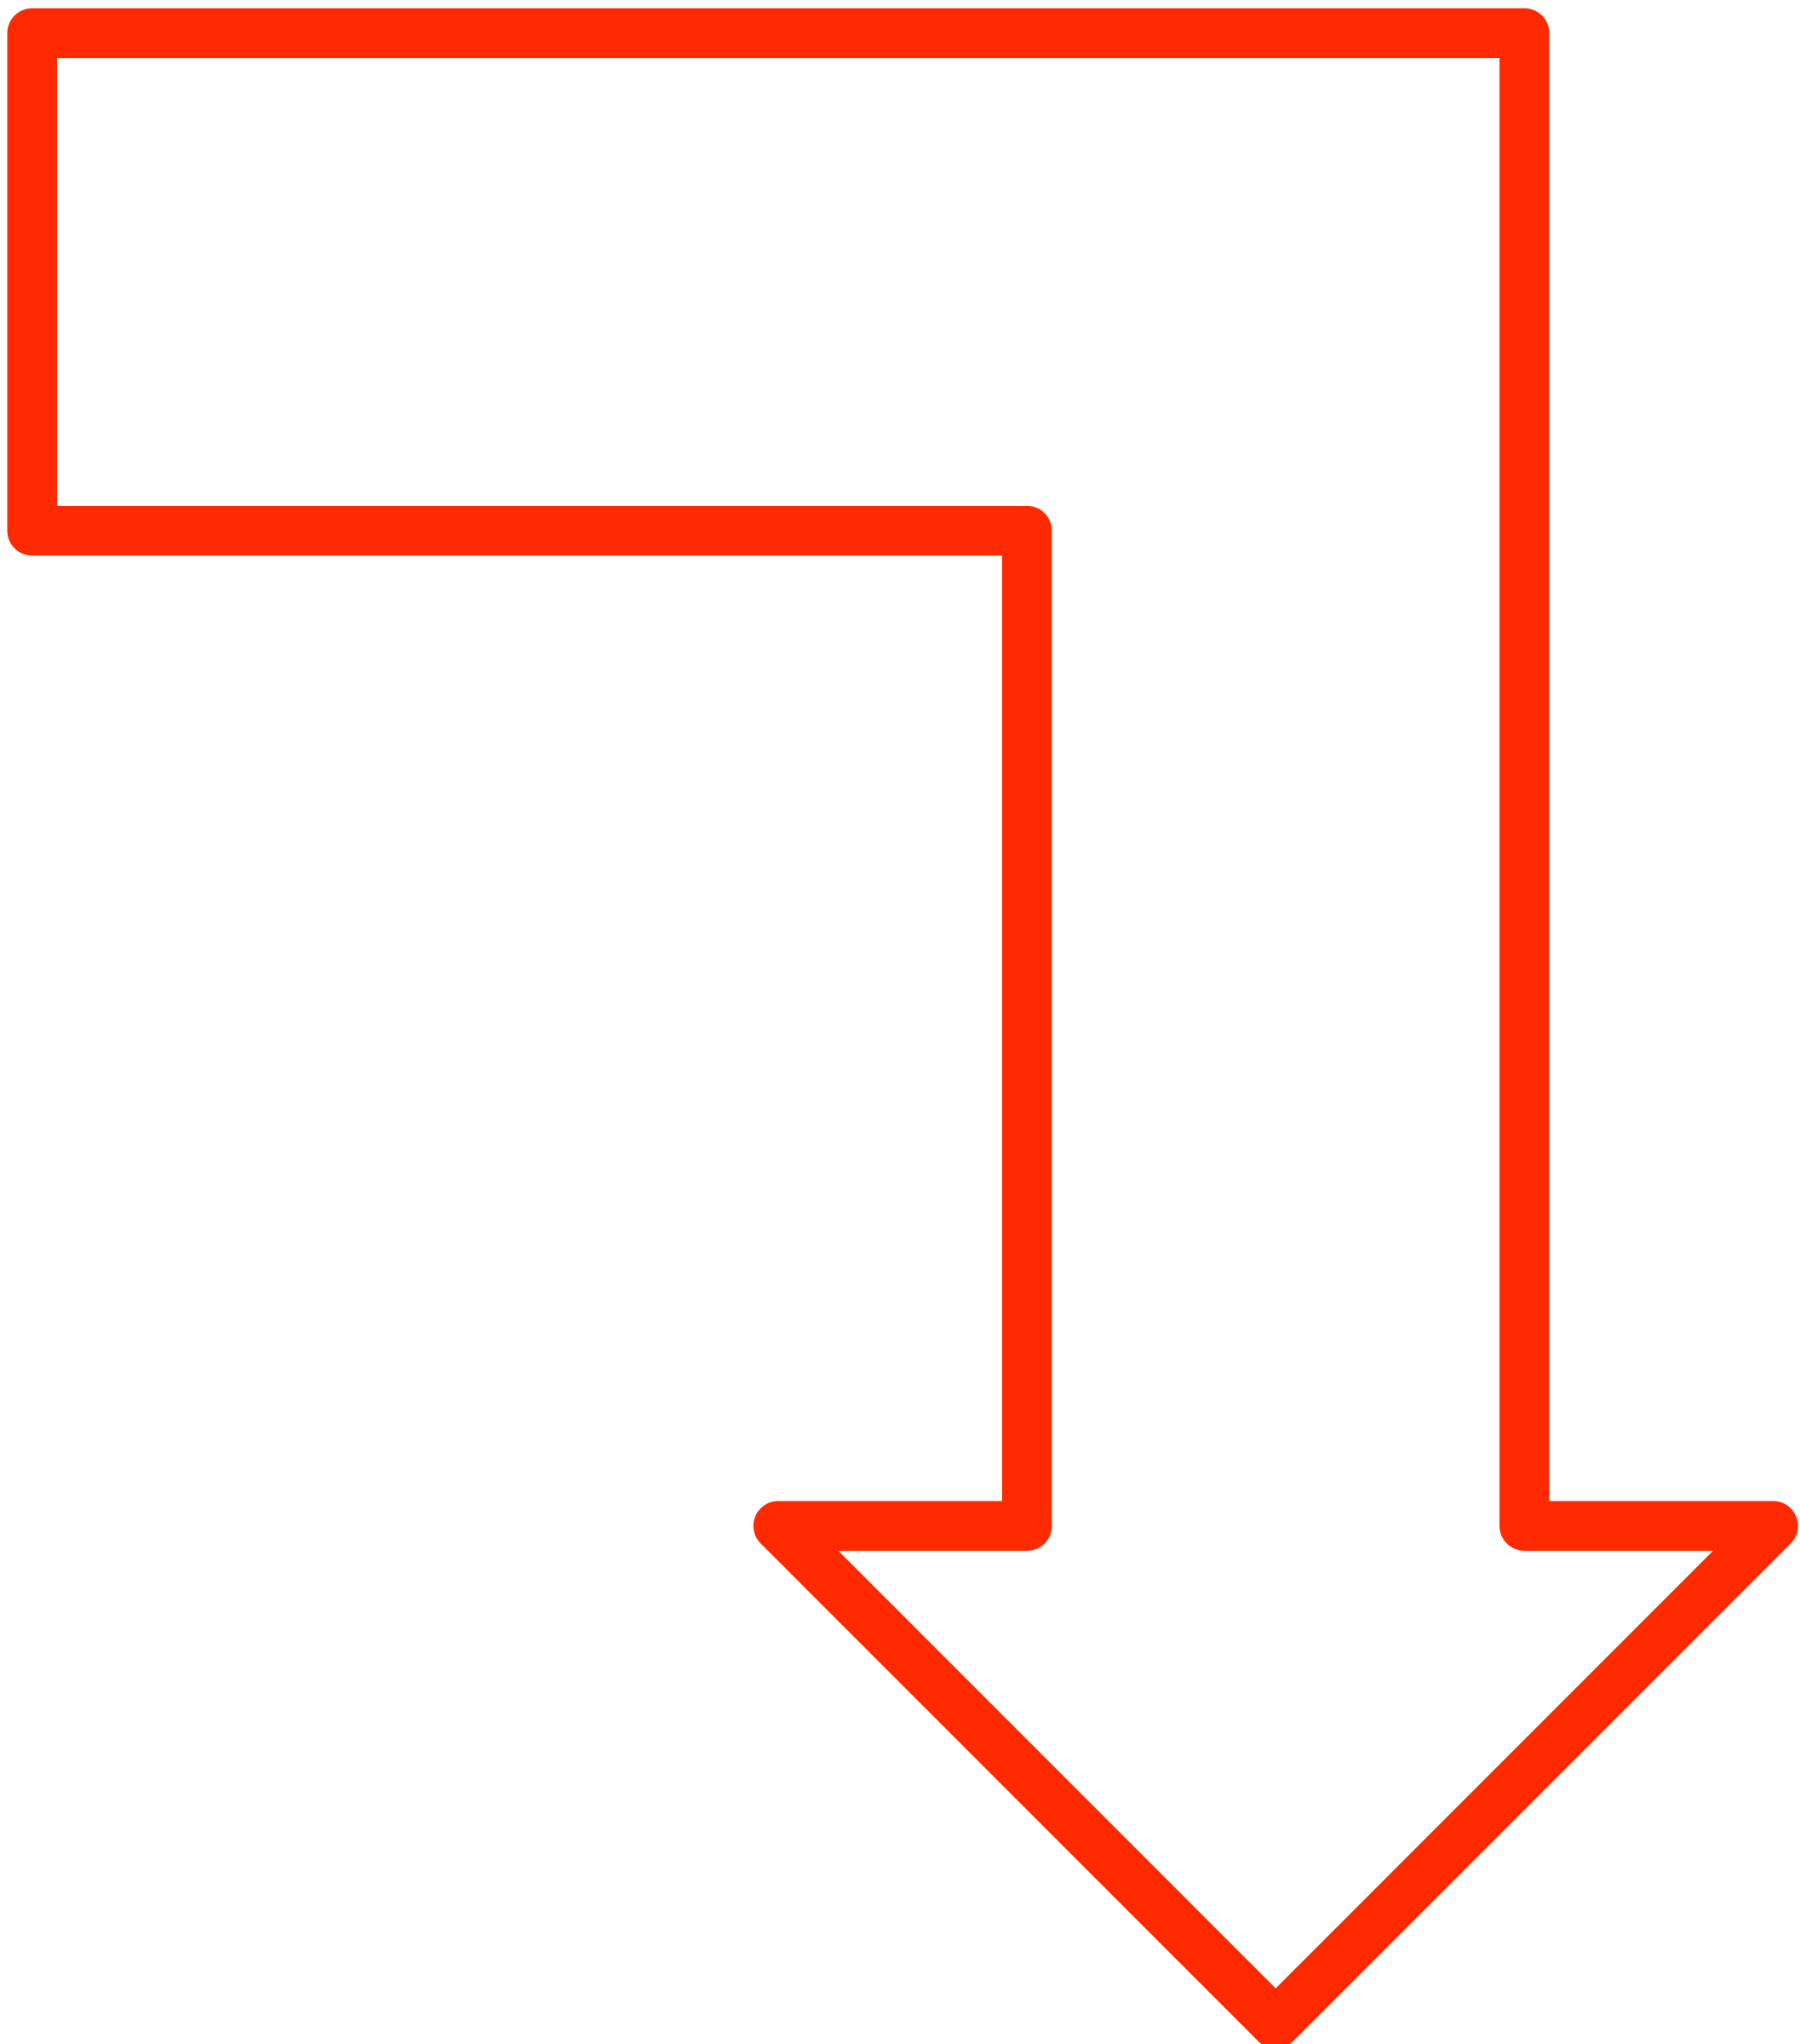 Clipart - L-shaped arrow set 4